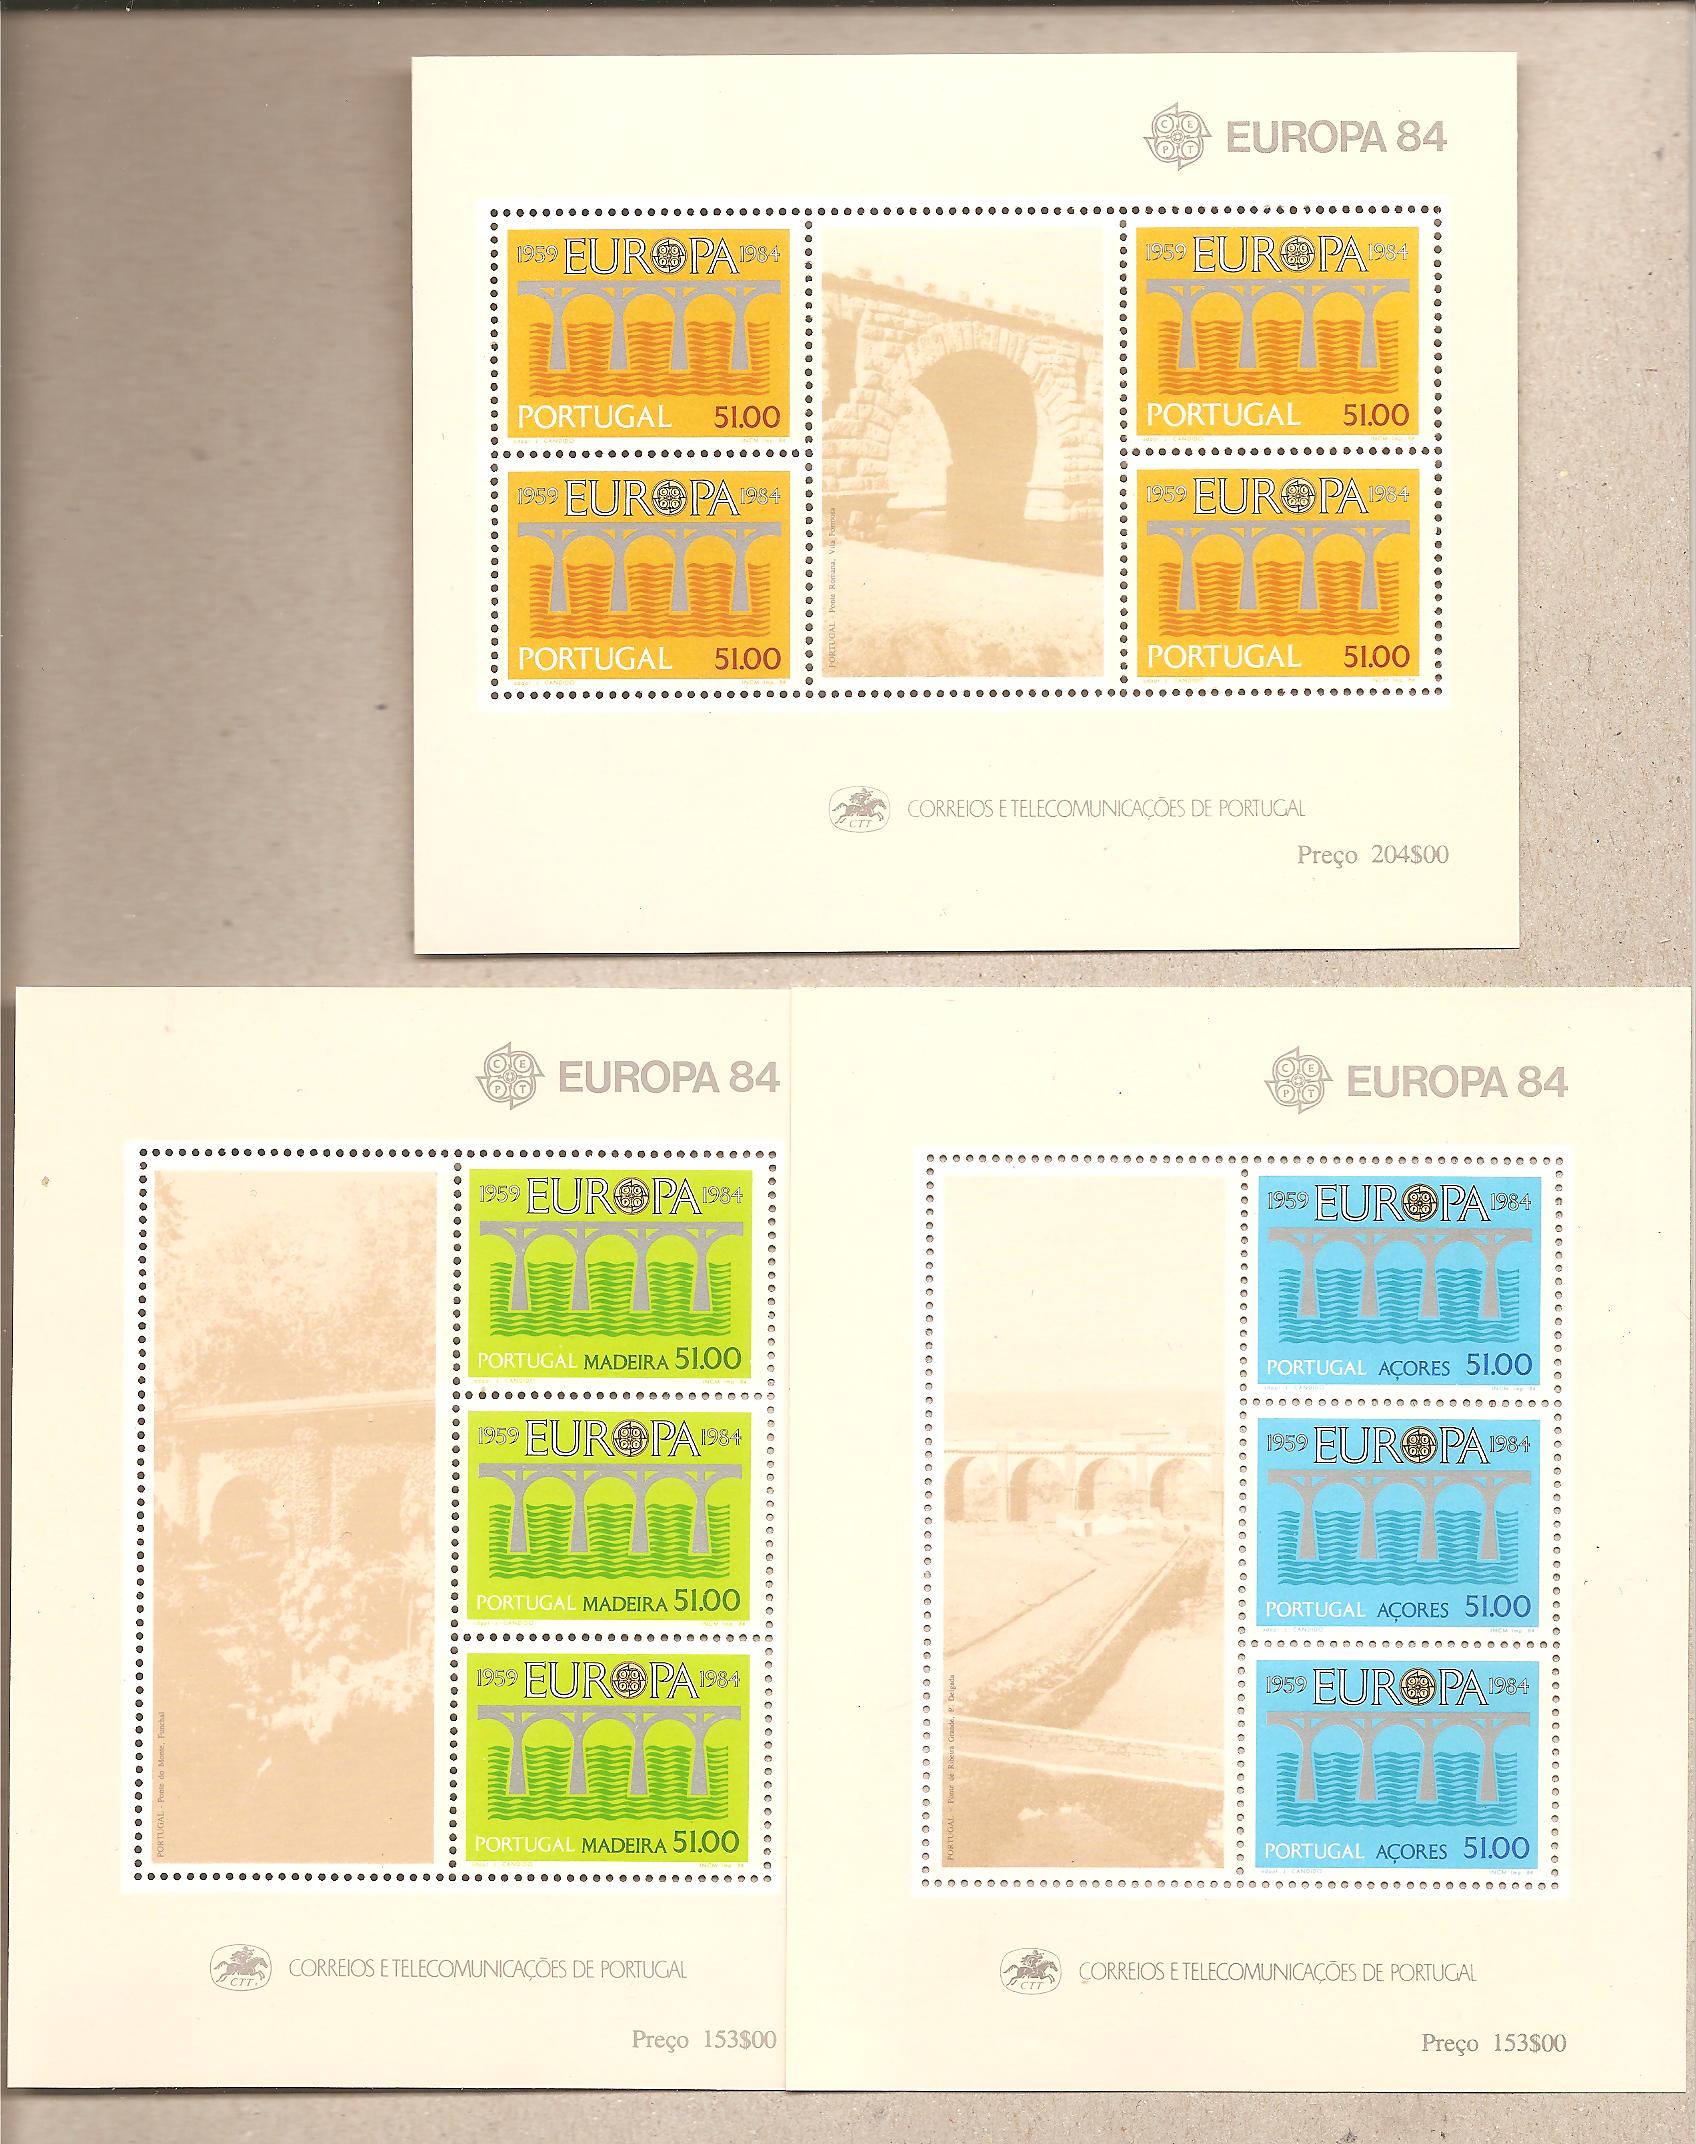 41459 - Portogallo, Azzore, Madera - foglietti nuovi: Europa 1984